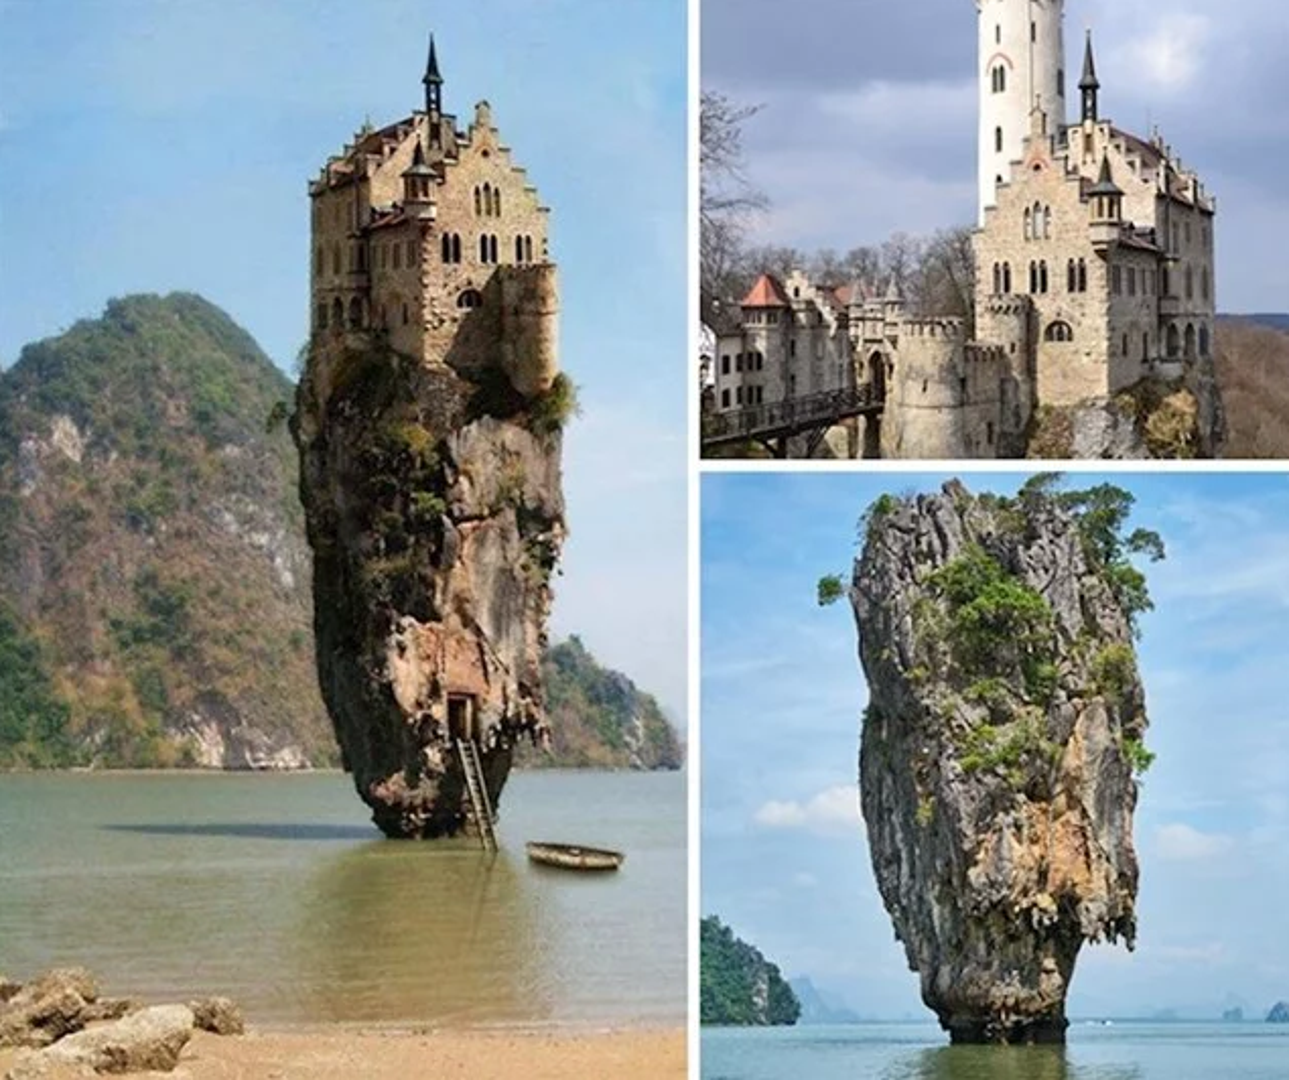 Masa ljudi oduševila se ovim neobičnim dvorcem i poželjela odmah uplatiti putovanje. Pitanje je gdje? Ovaj dvorac nastao je u fotošopu, a mješavina je stijene na Tajlandu i dvorca u Njemačkoj.